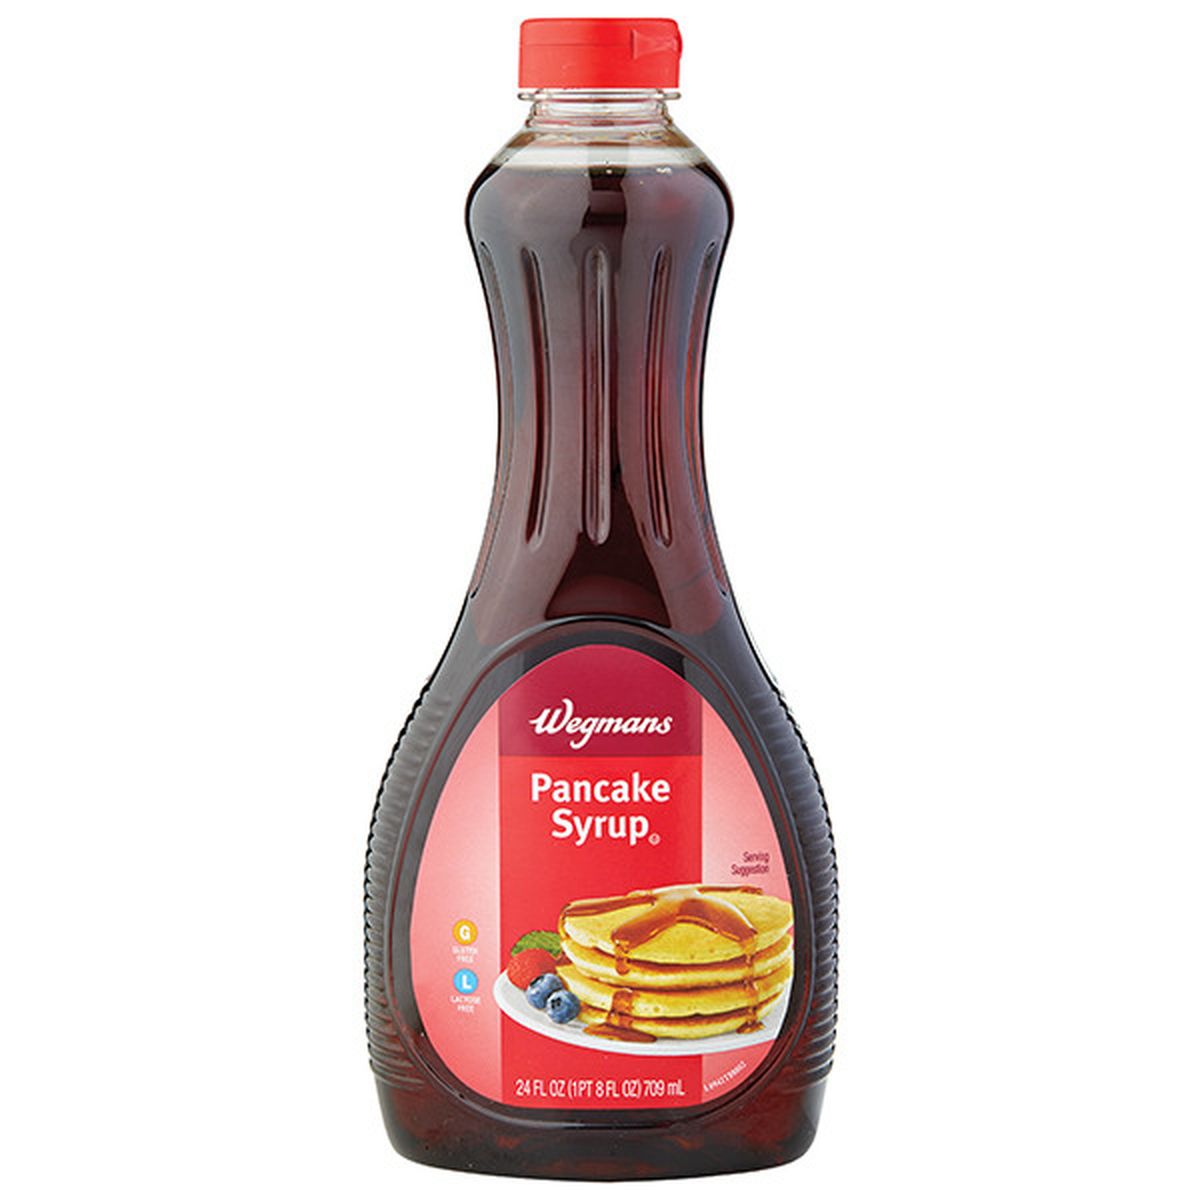 Calories in Wegmans Pancake Syrup